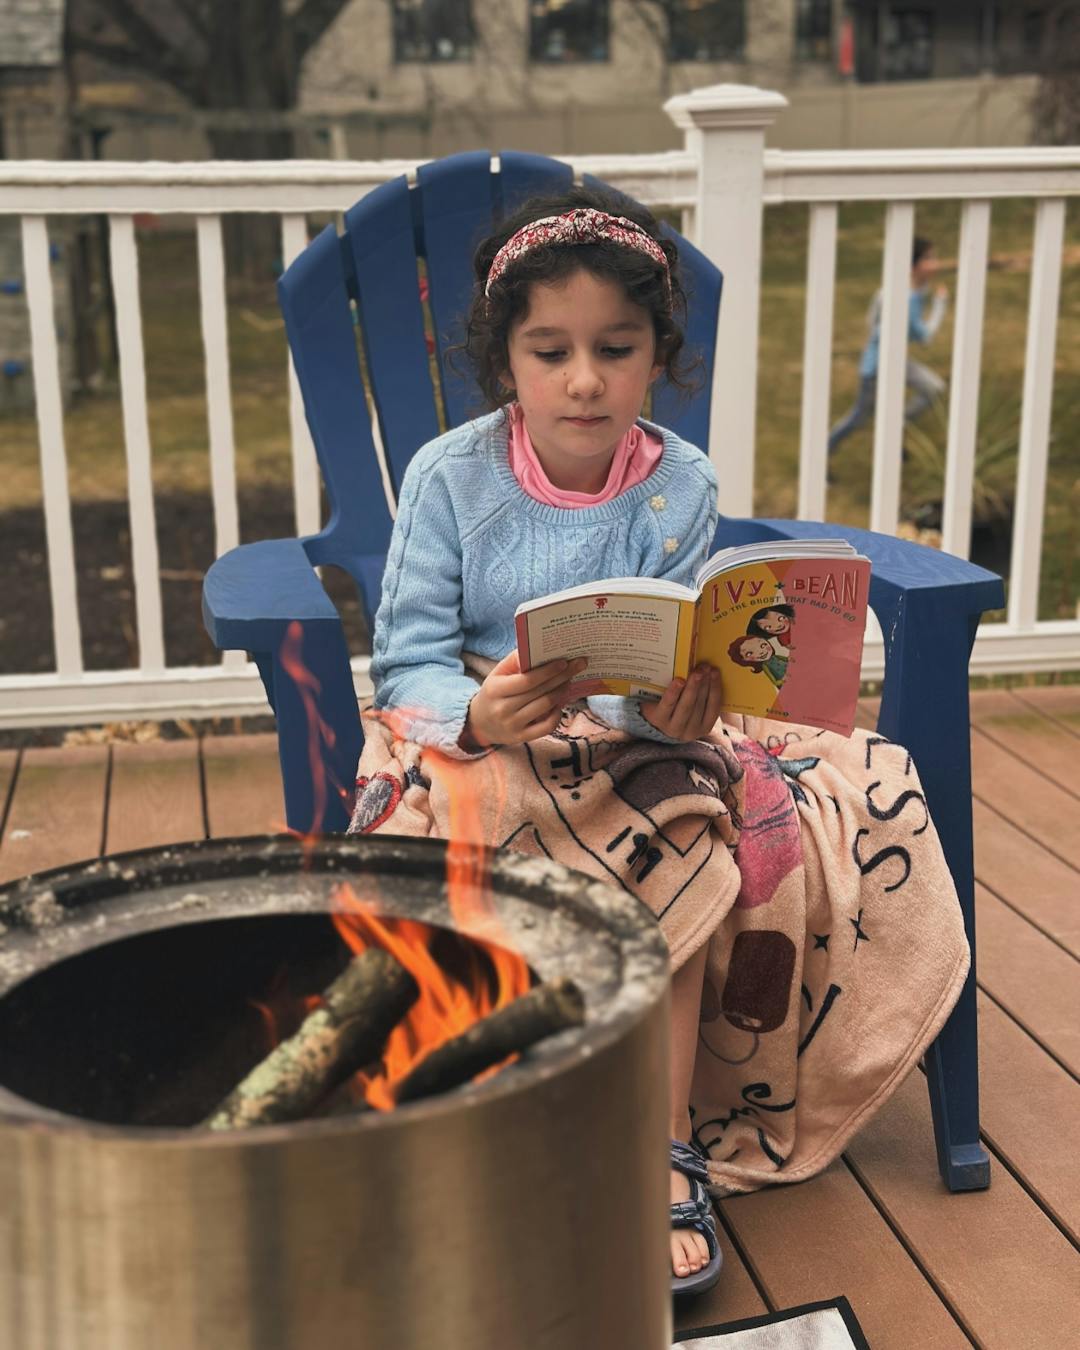 My outdoor girl (swiftie blanket and book)&#8230;